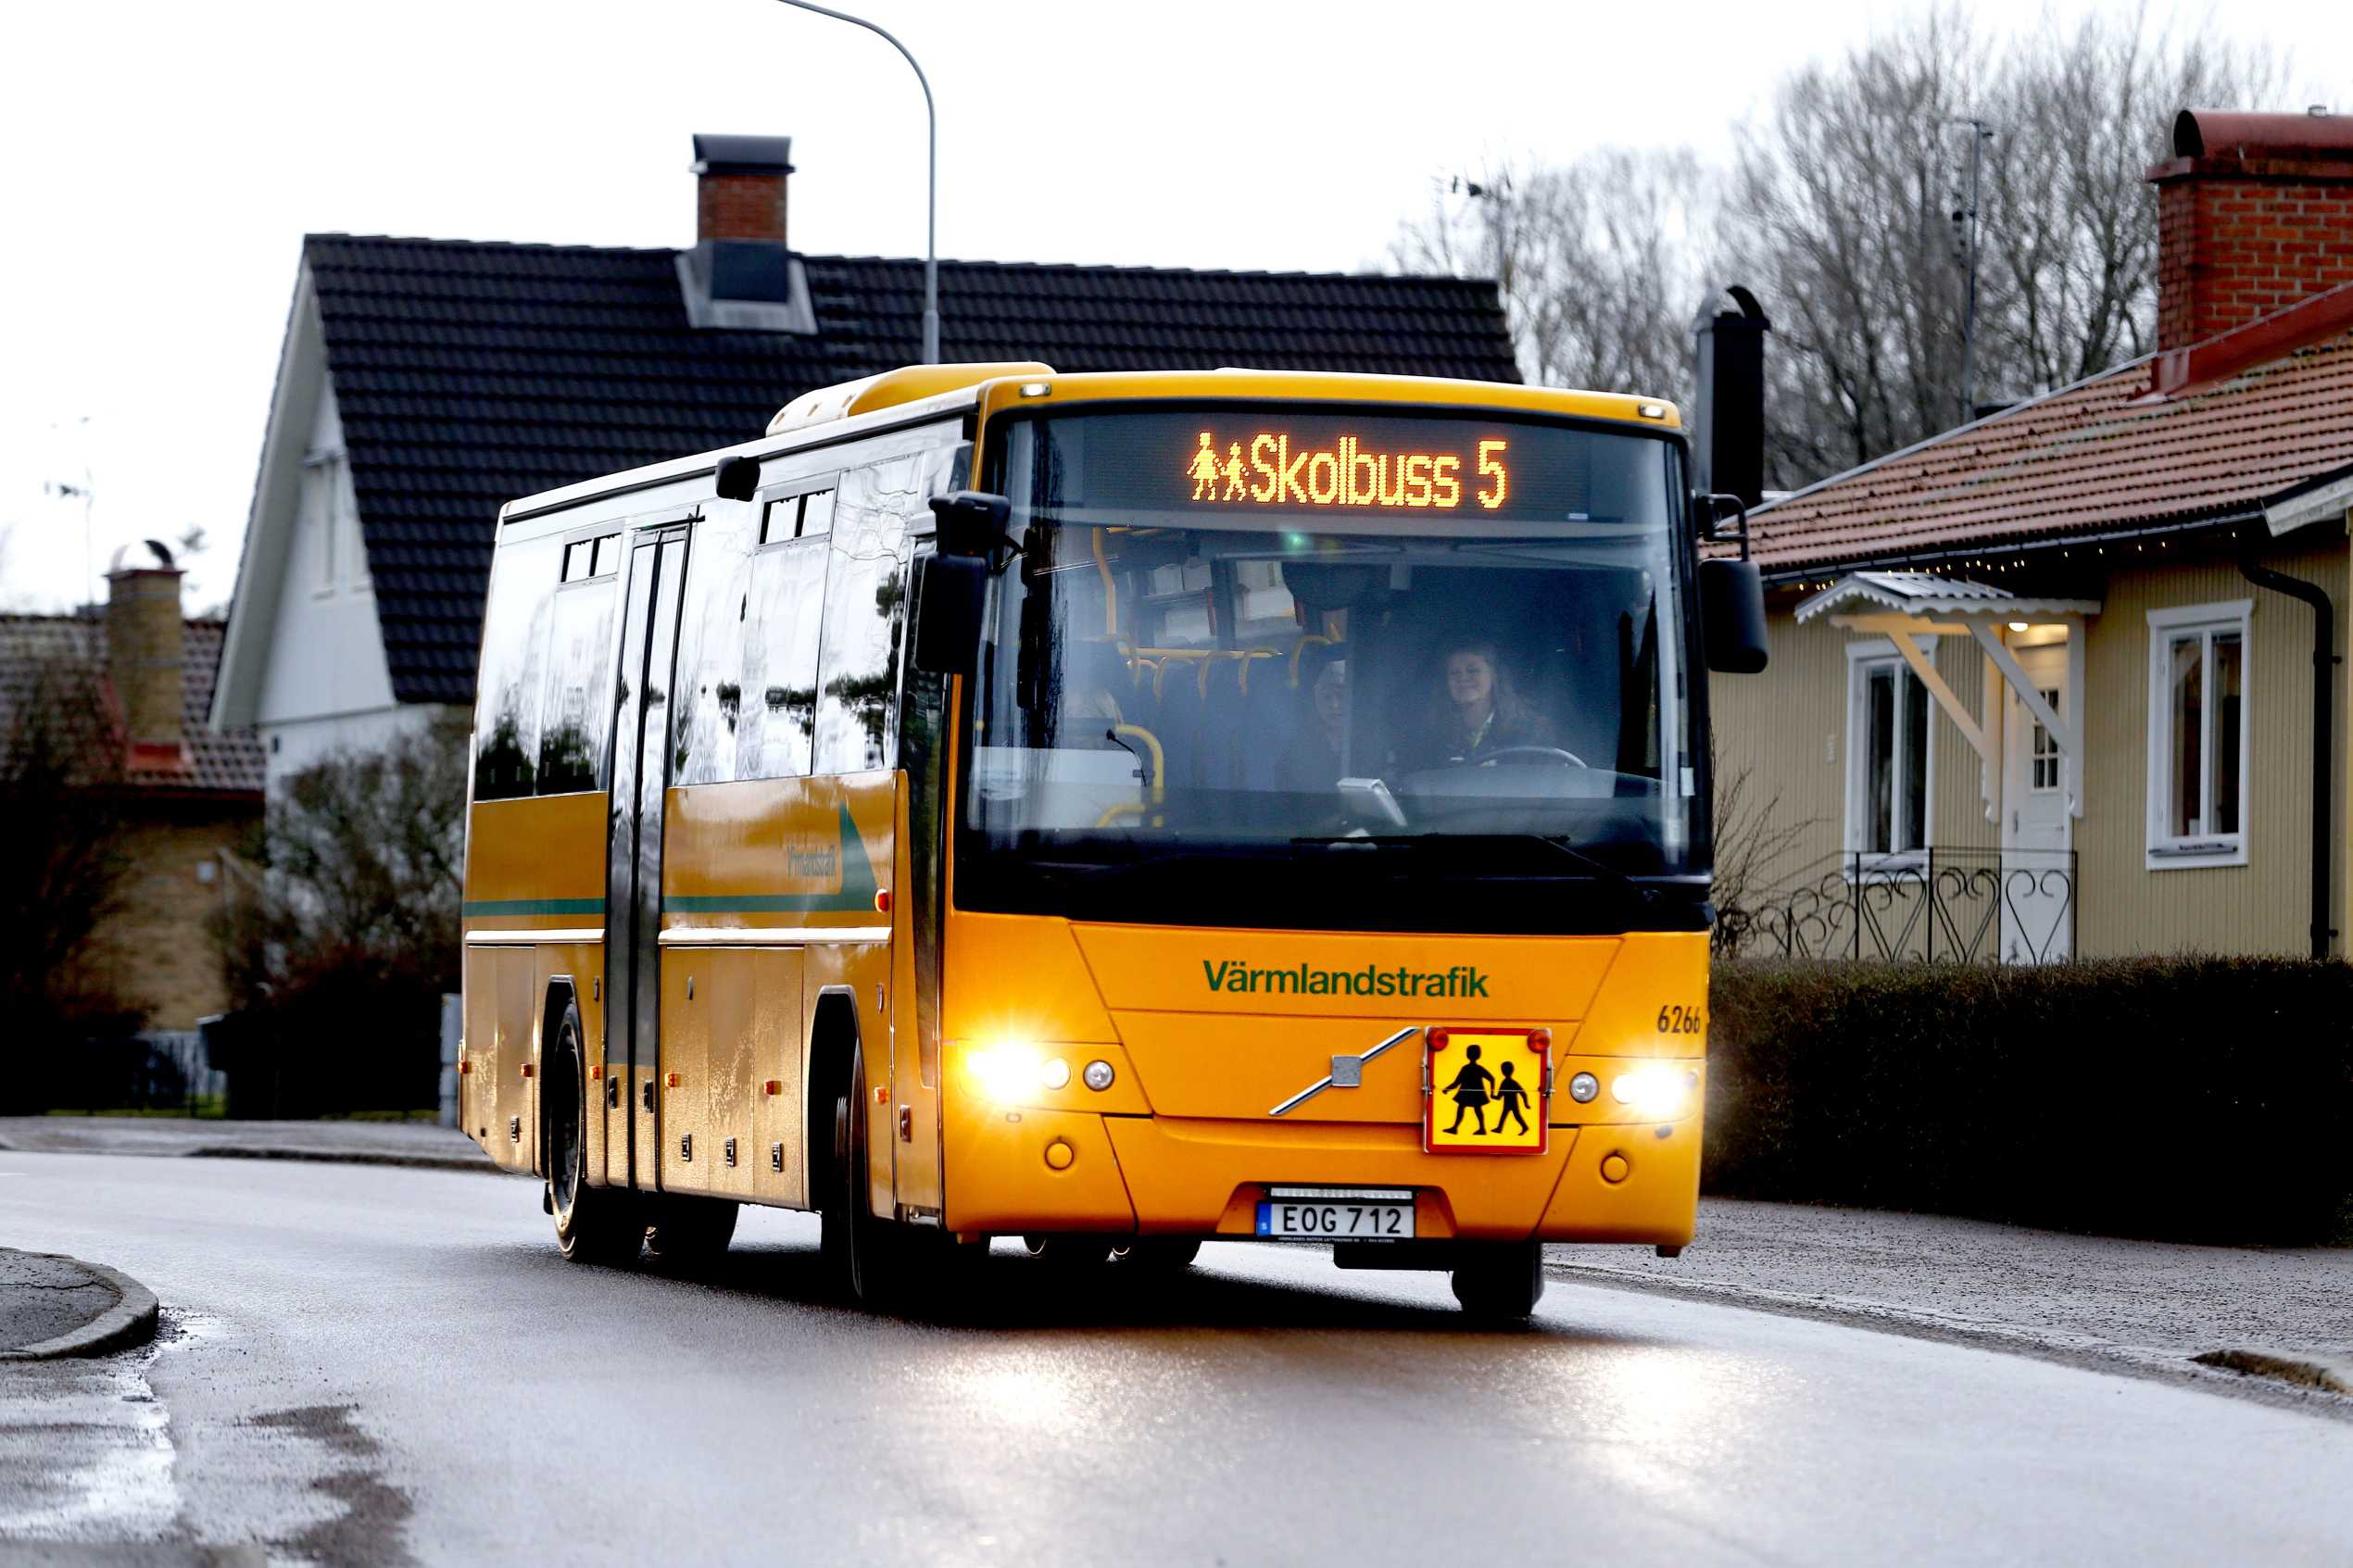 en skolbuss som åker på en bilväg, på bussen står det skolbuss 5